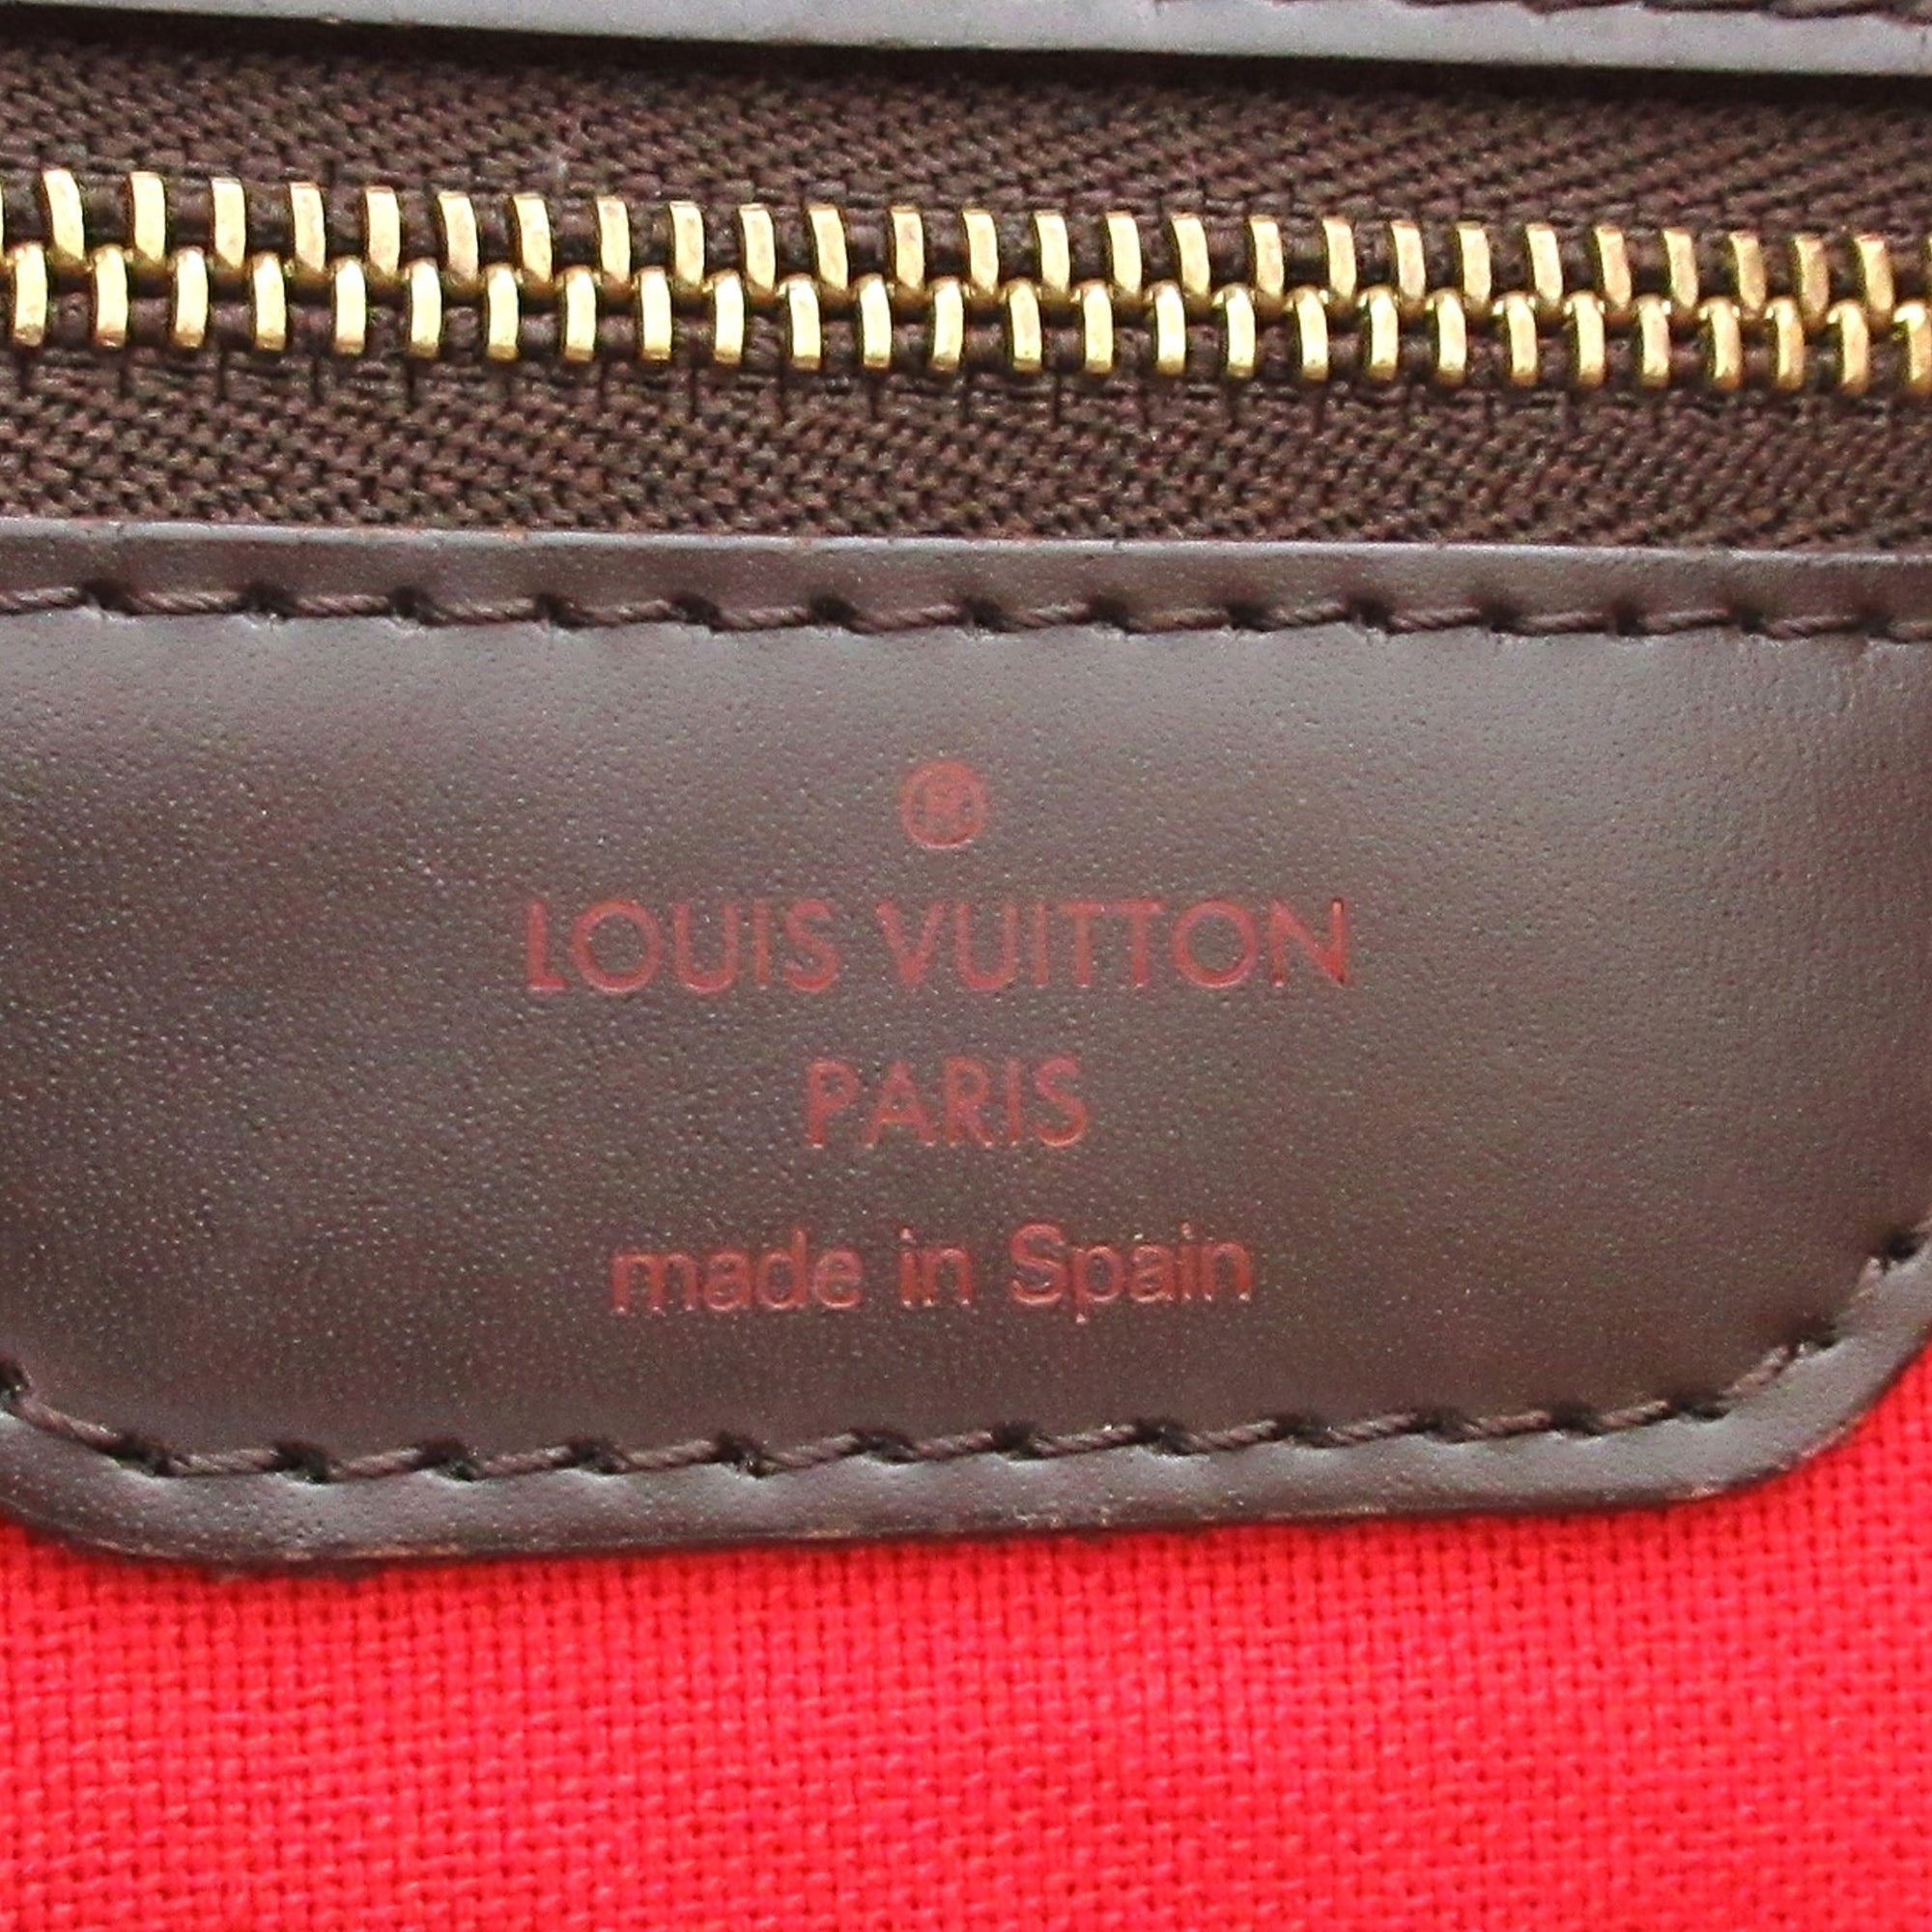 Louis Vuitton Damier Ebene Cabas Rivington - Brown Totes, Handbags